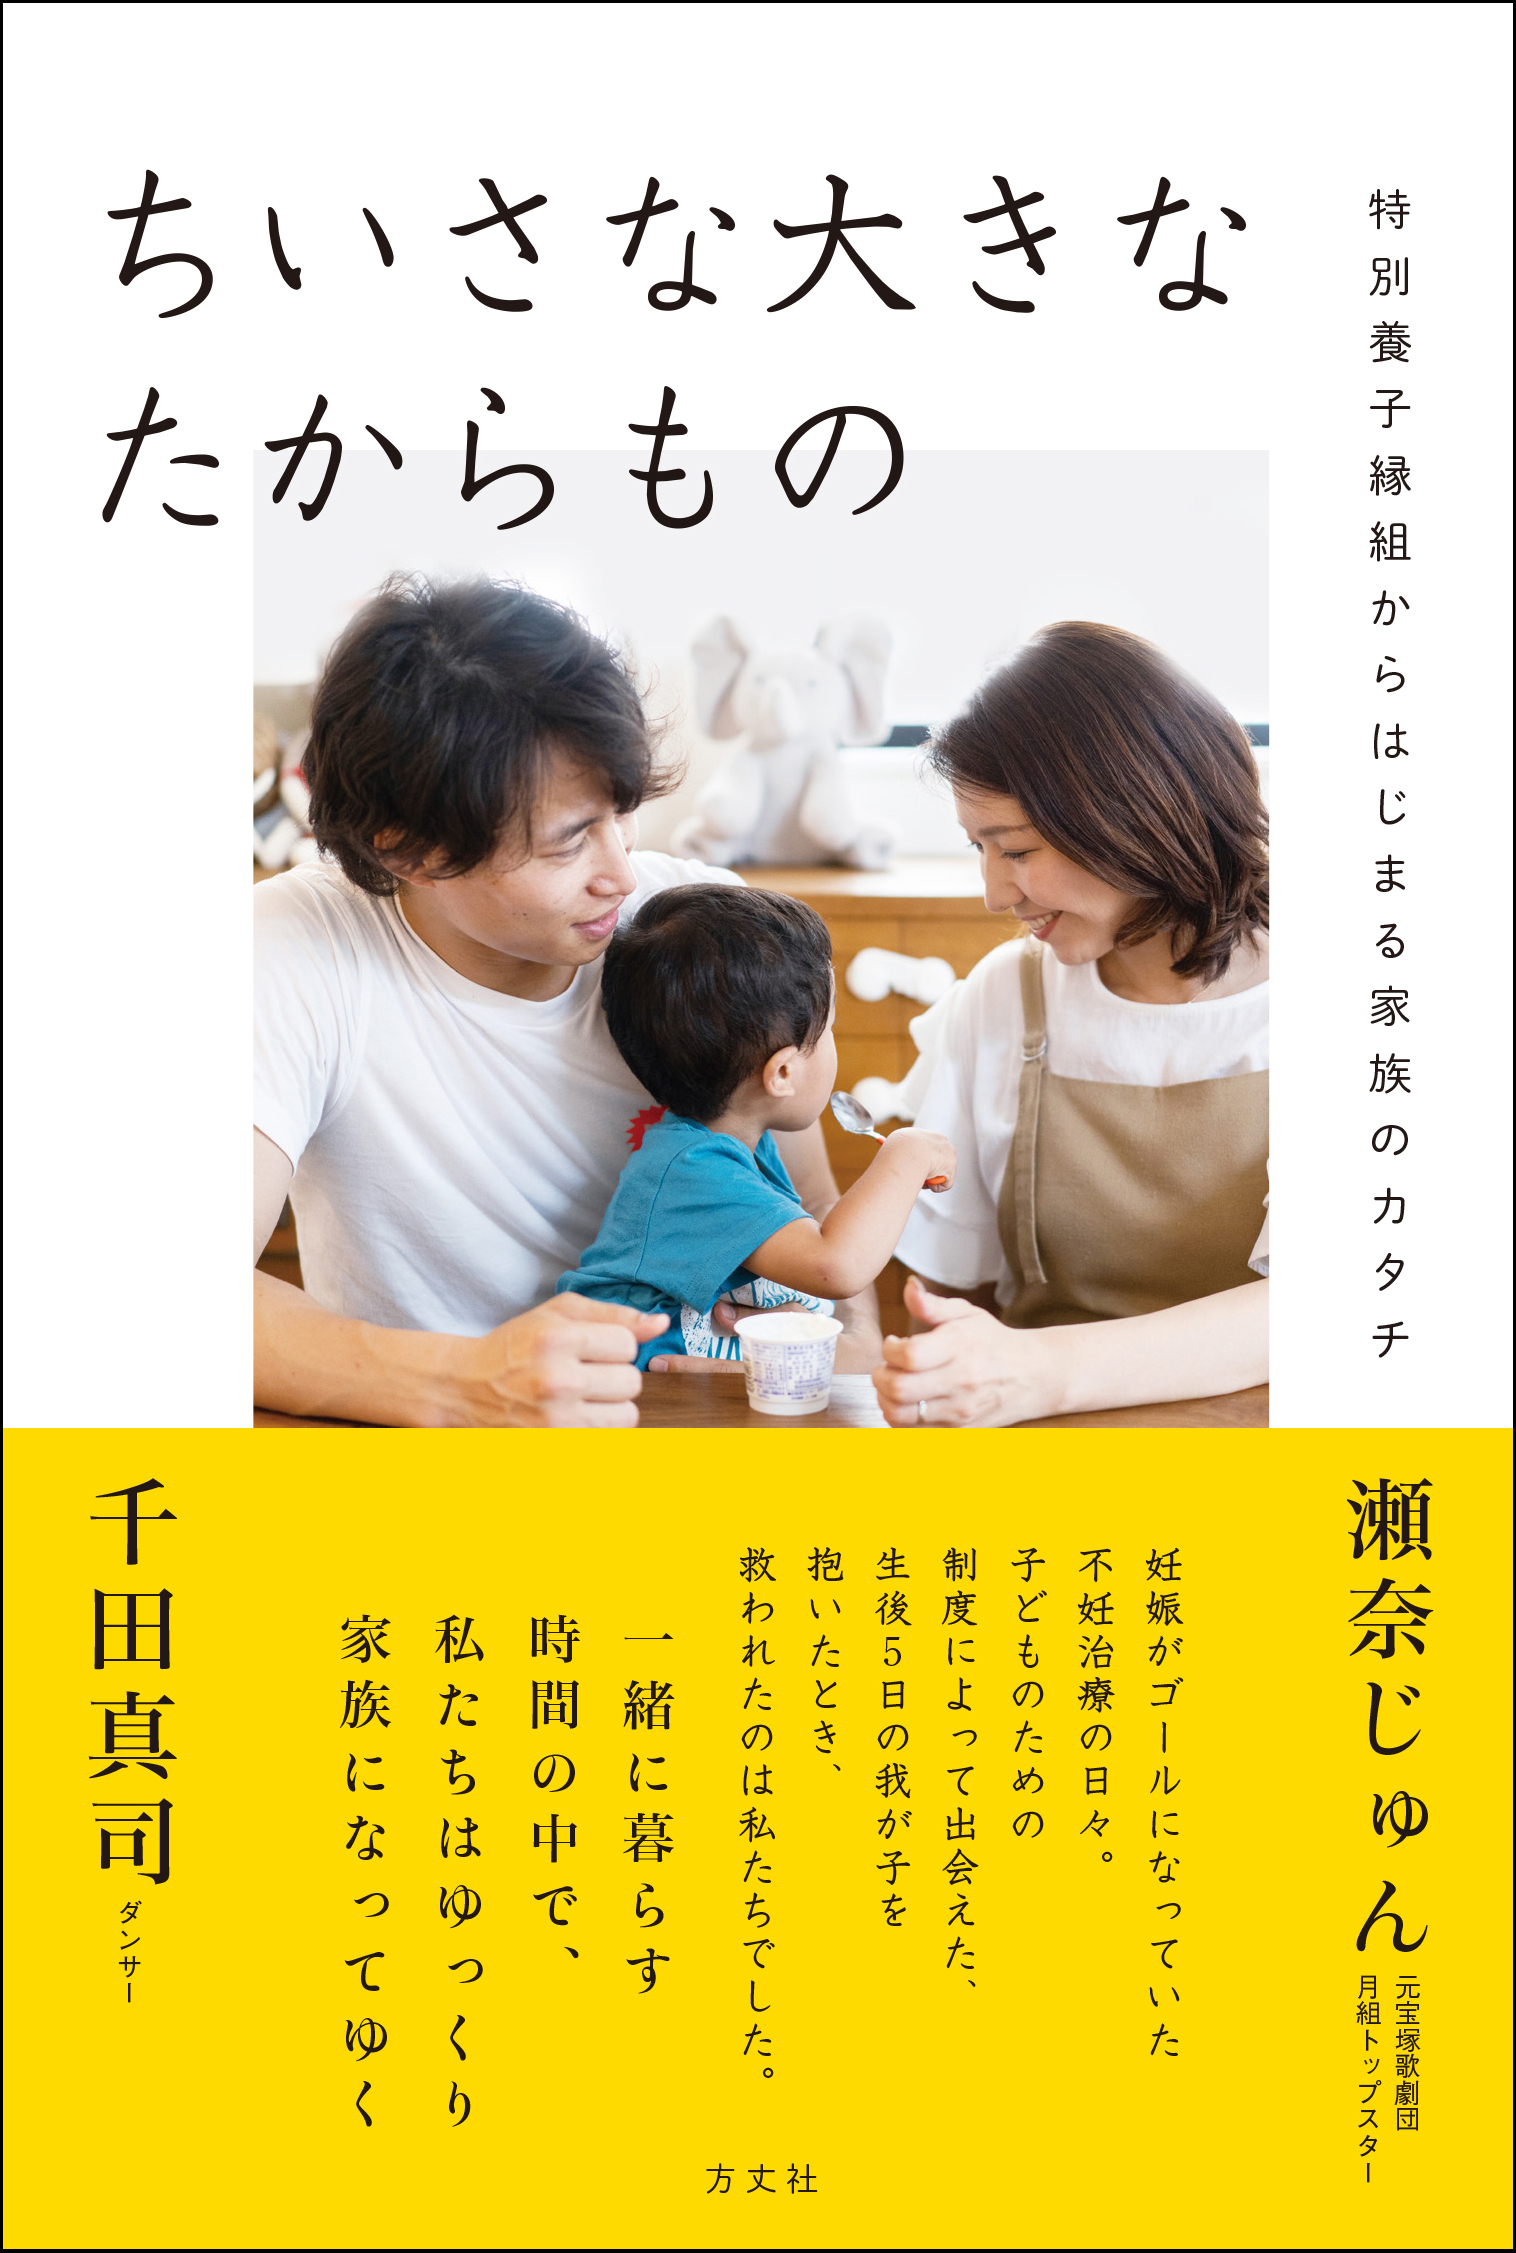 瀬奈じゅんさん 千田真司さん夫妻が ちいさな大きなたからもの の出版を決意した思いについて語る動画を公開 方丈社のプレスリリース